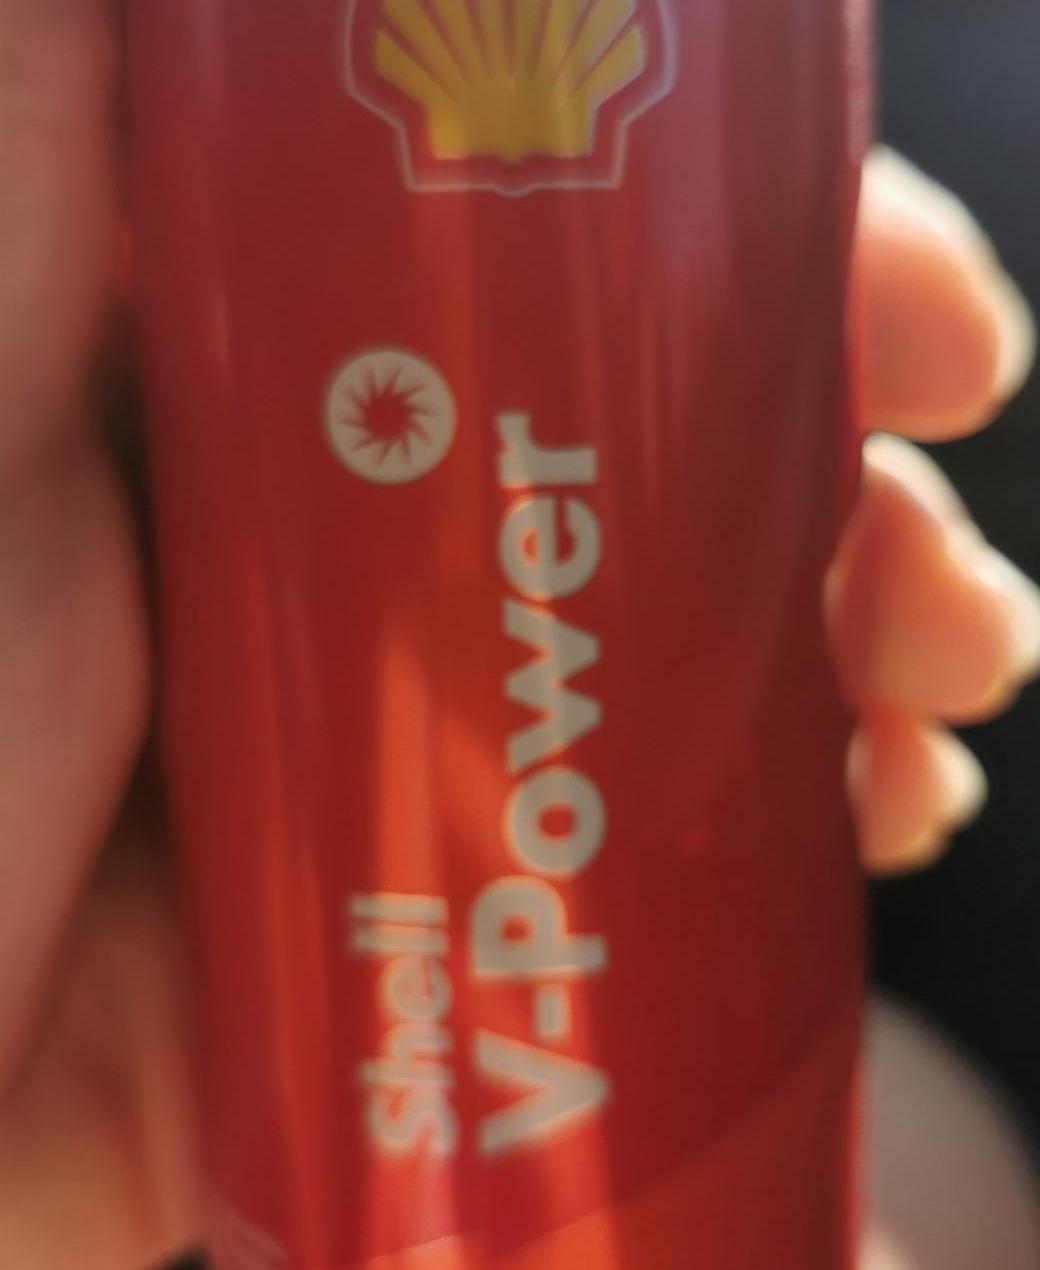 Fotografie - Shell V-Power classic energy drink